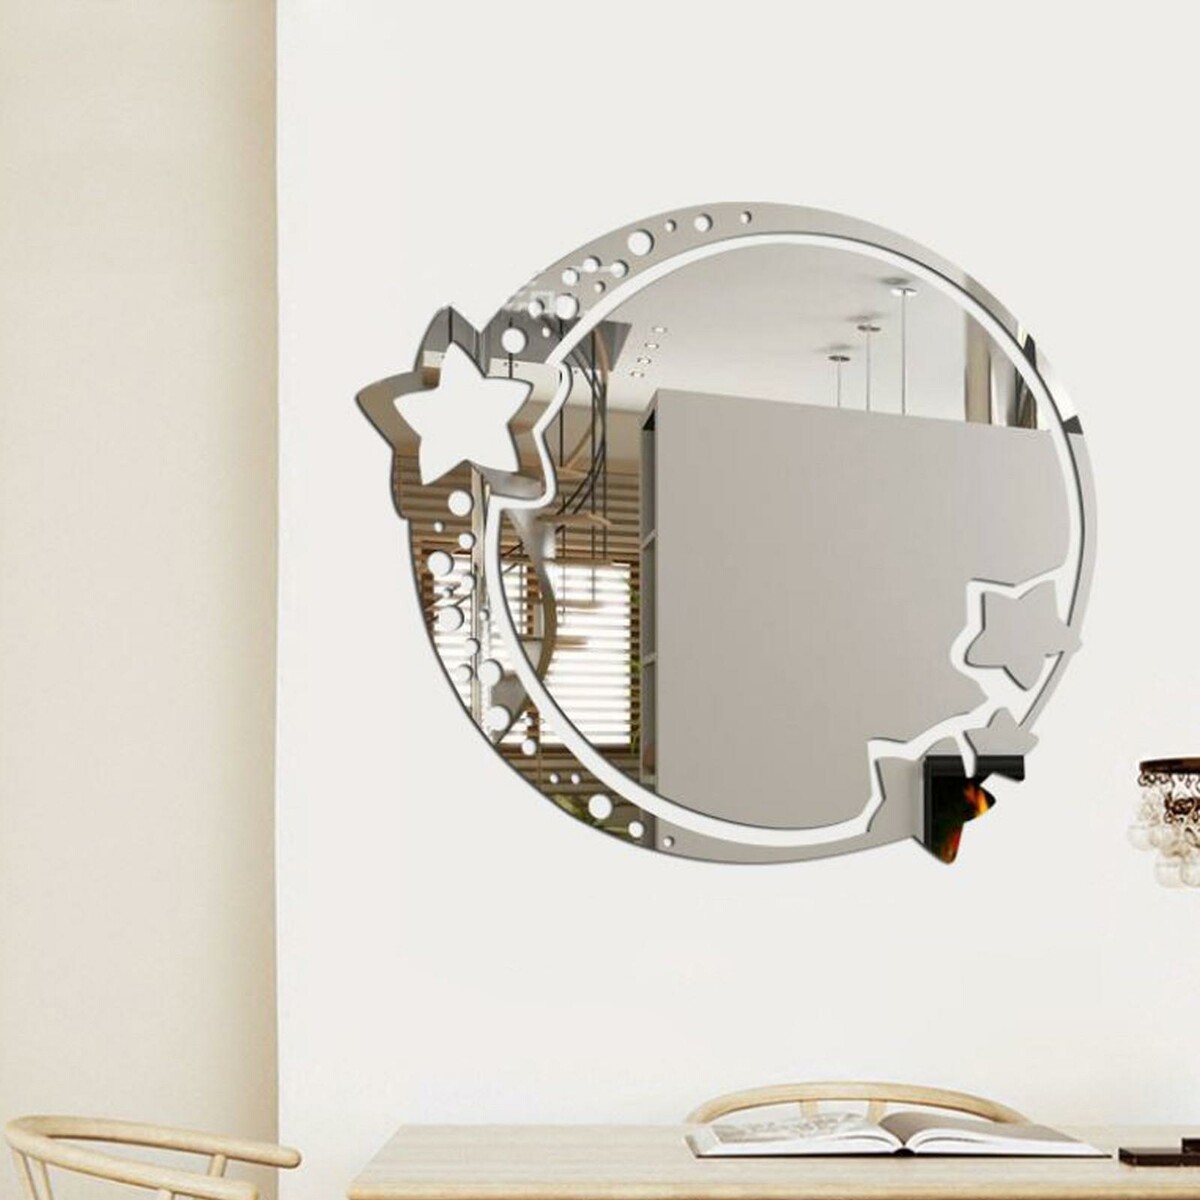 Зеркало настенное, наклейки интерьерные, зеркальные, декор на стену, панно 22 х 19 см чернокнижец зеркальные врата теней